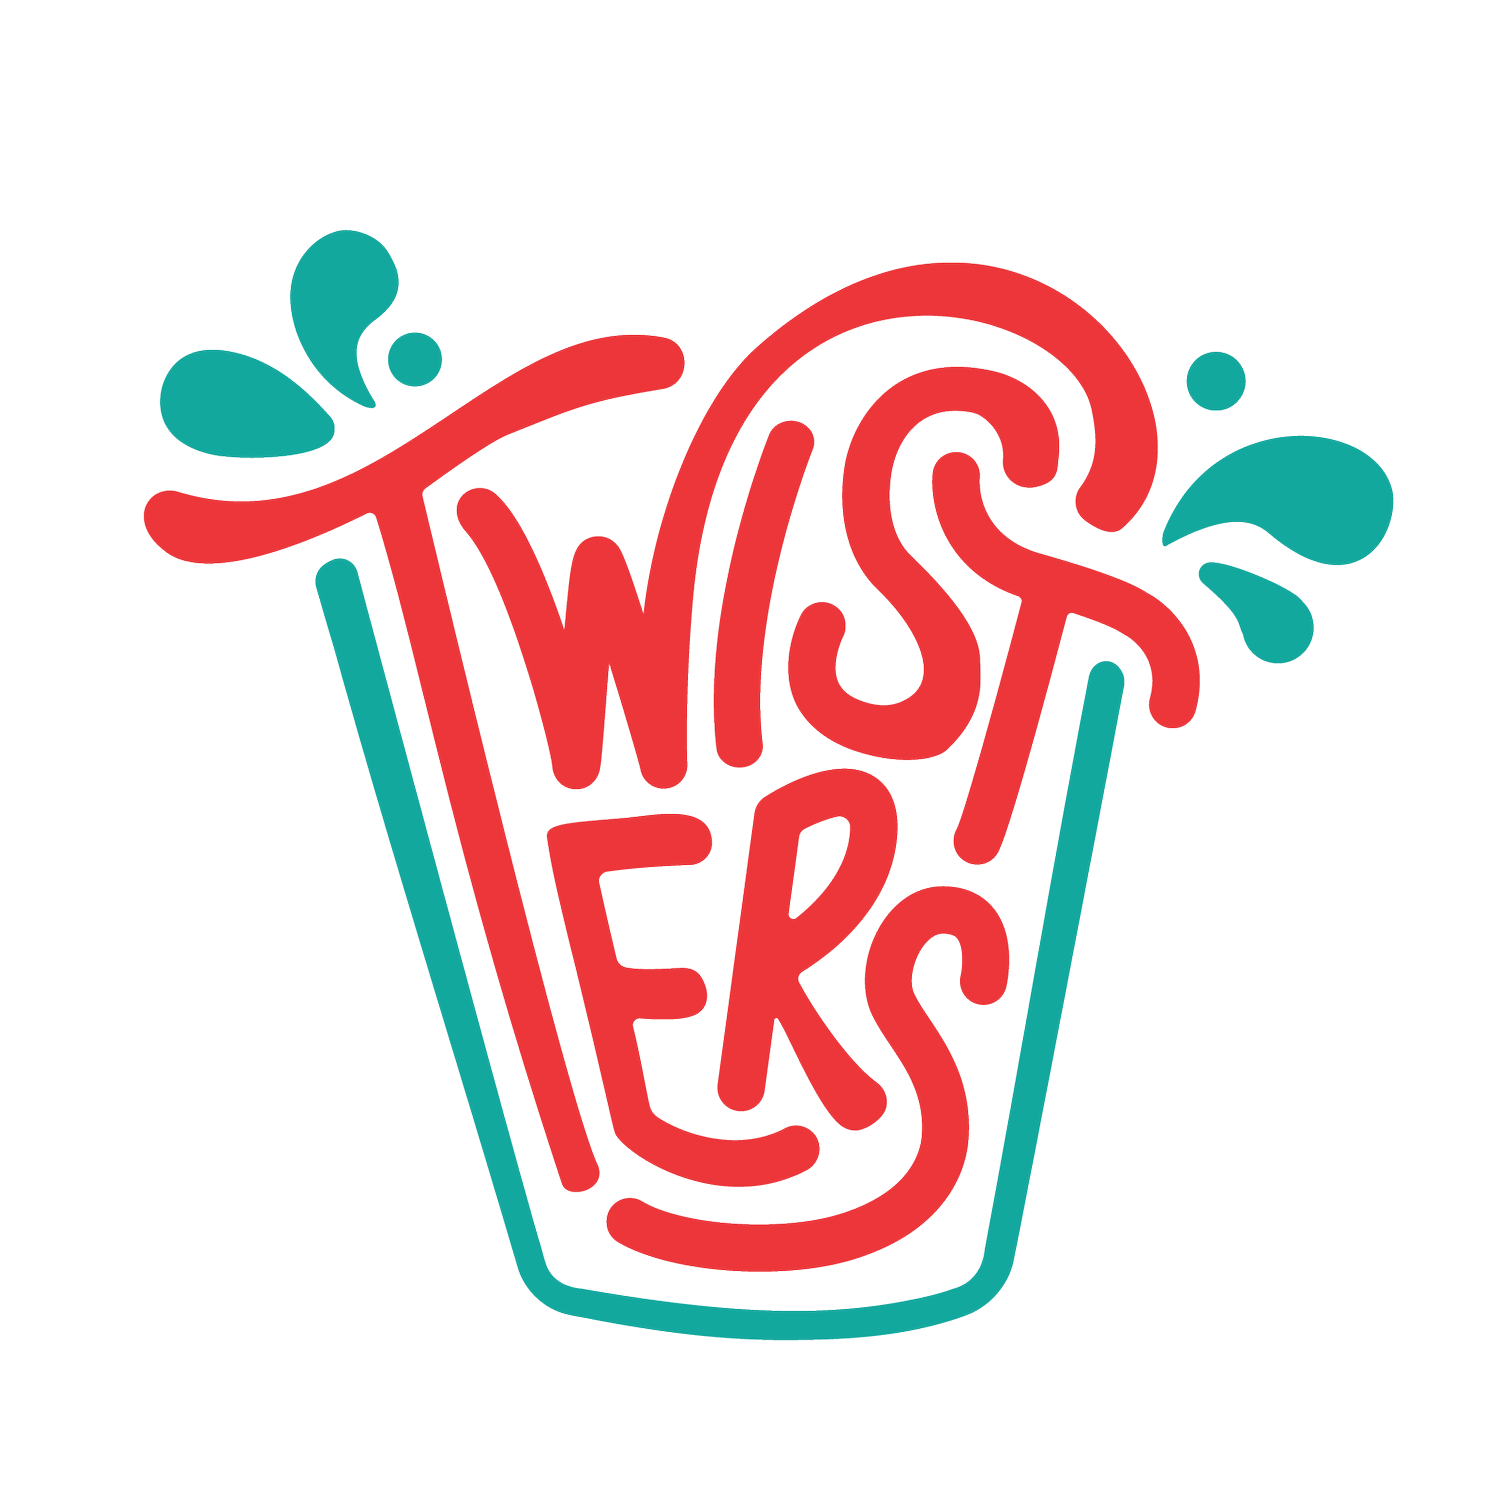 Twisters Soda Bar